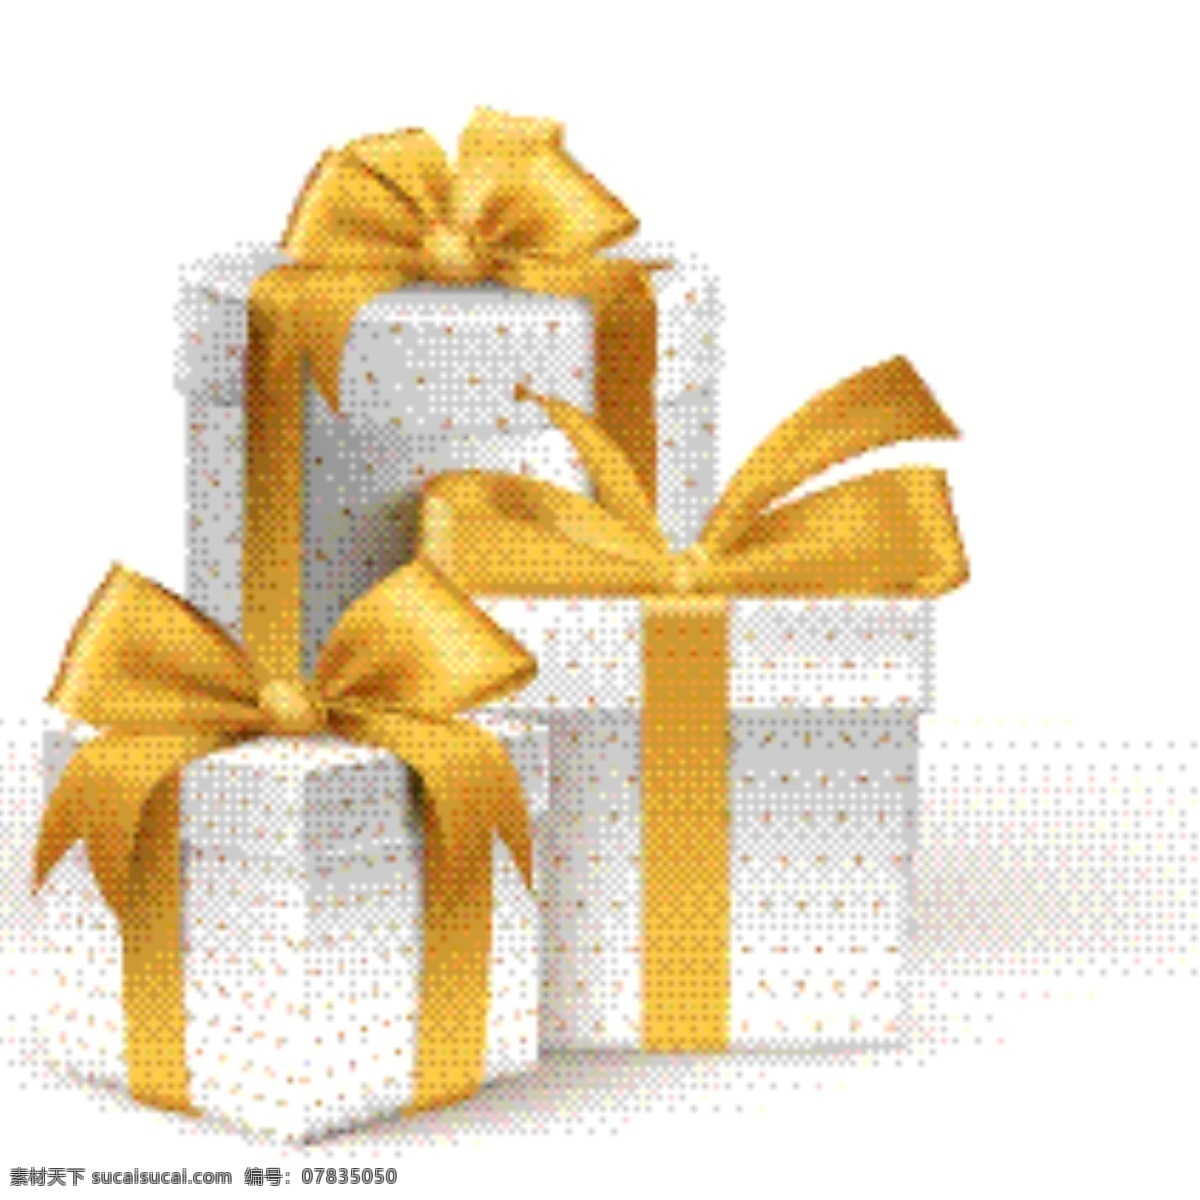 精美蝴蝶结 礼物盒素材 礼物包装盒 节庆礼物 生日礼物 结婚礼物 蝴蝶结 红色礼物盒 矢量礼物盒 3d礼物盒 粉红礼物盒 蓝色礼物盒 绿色礼物盒 方形礼物盒 心形礼物盒